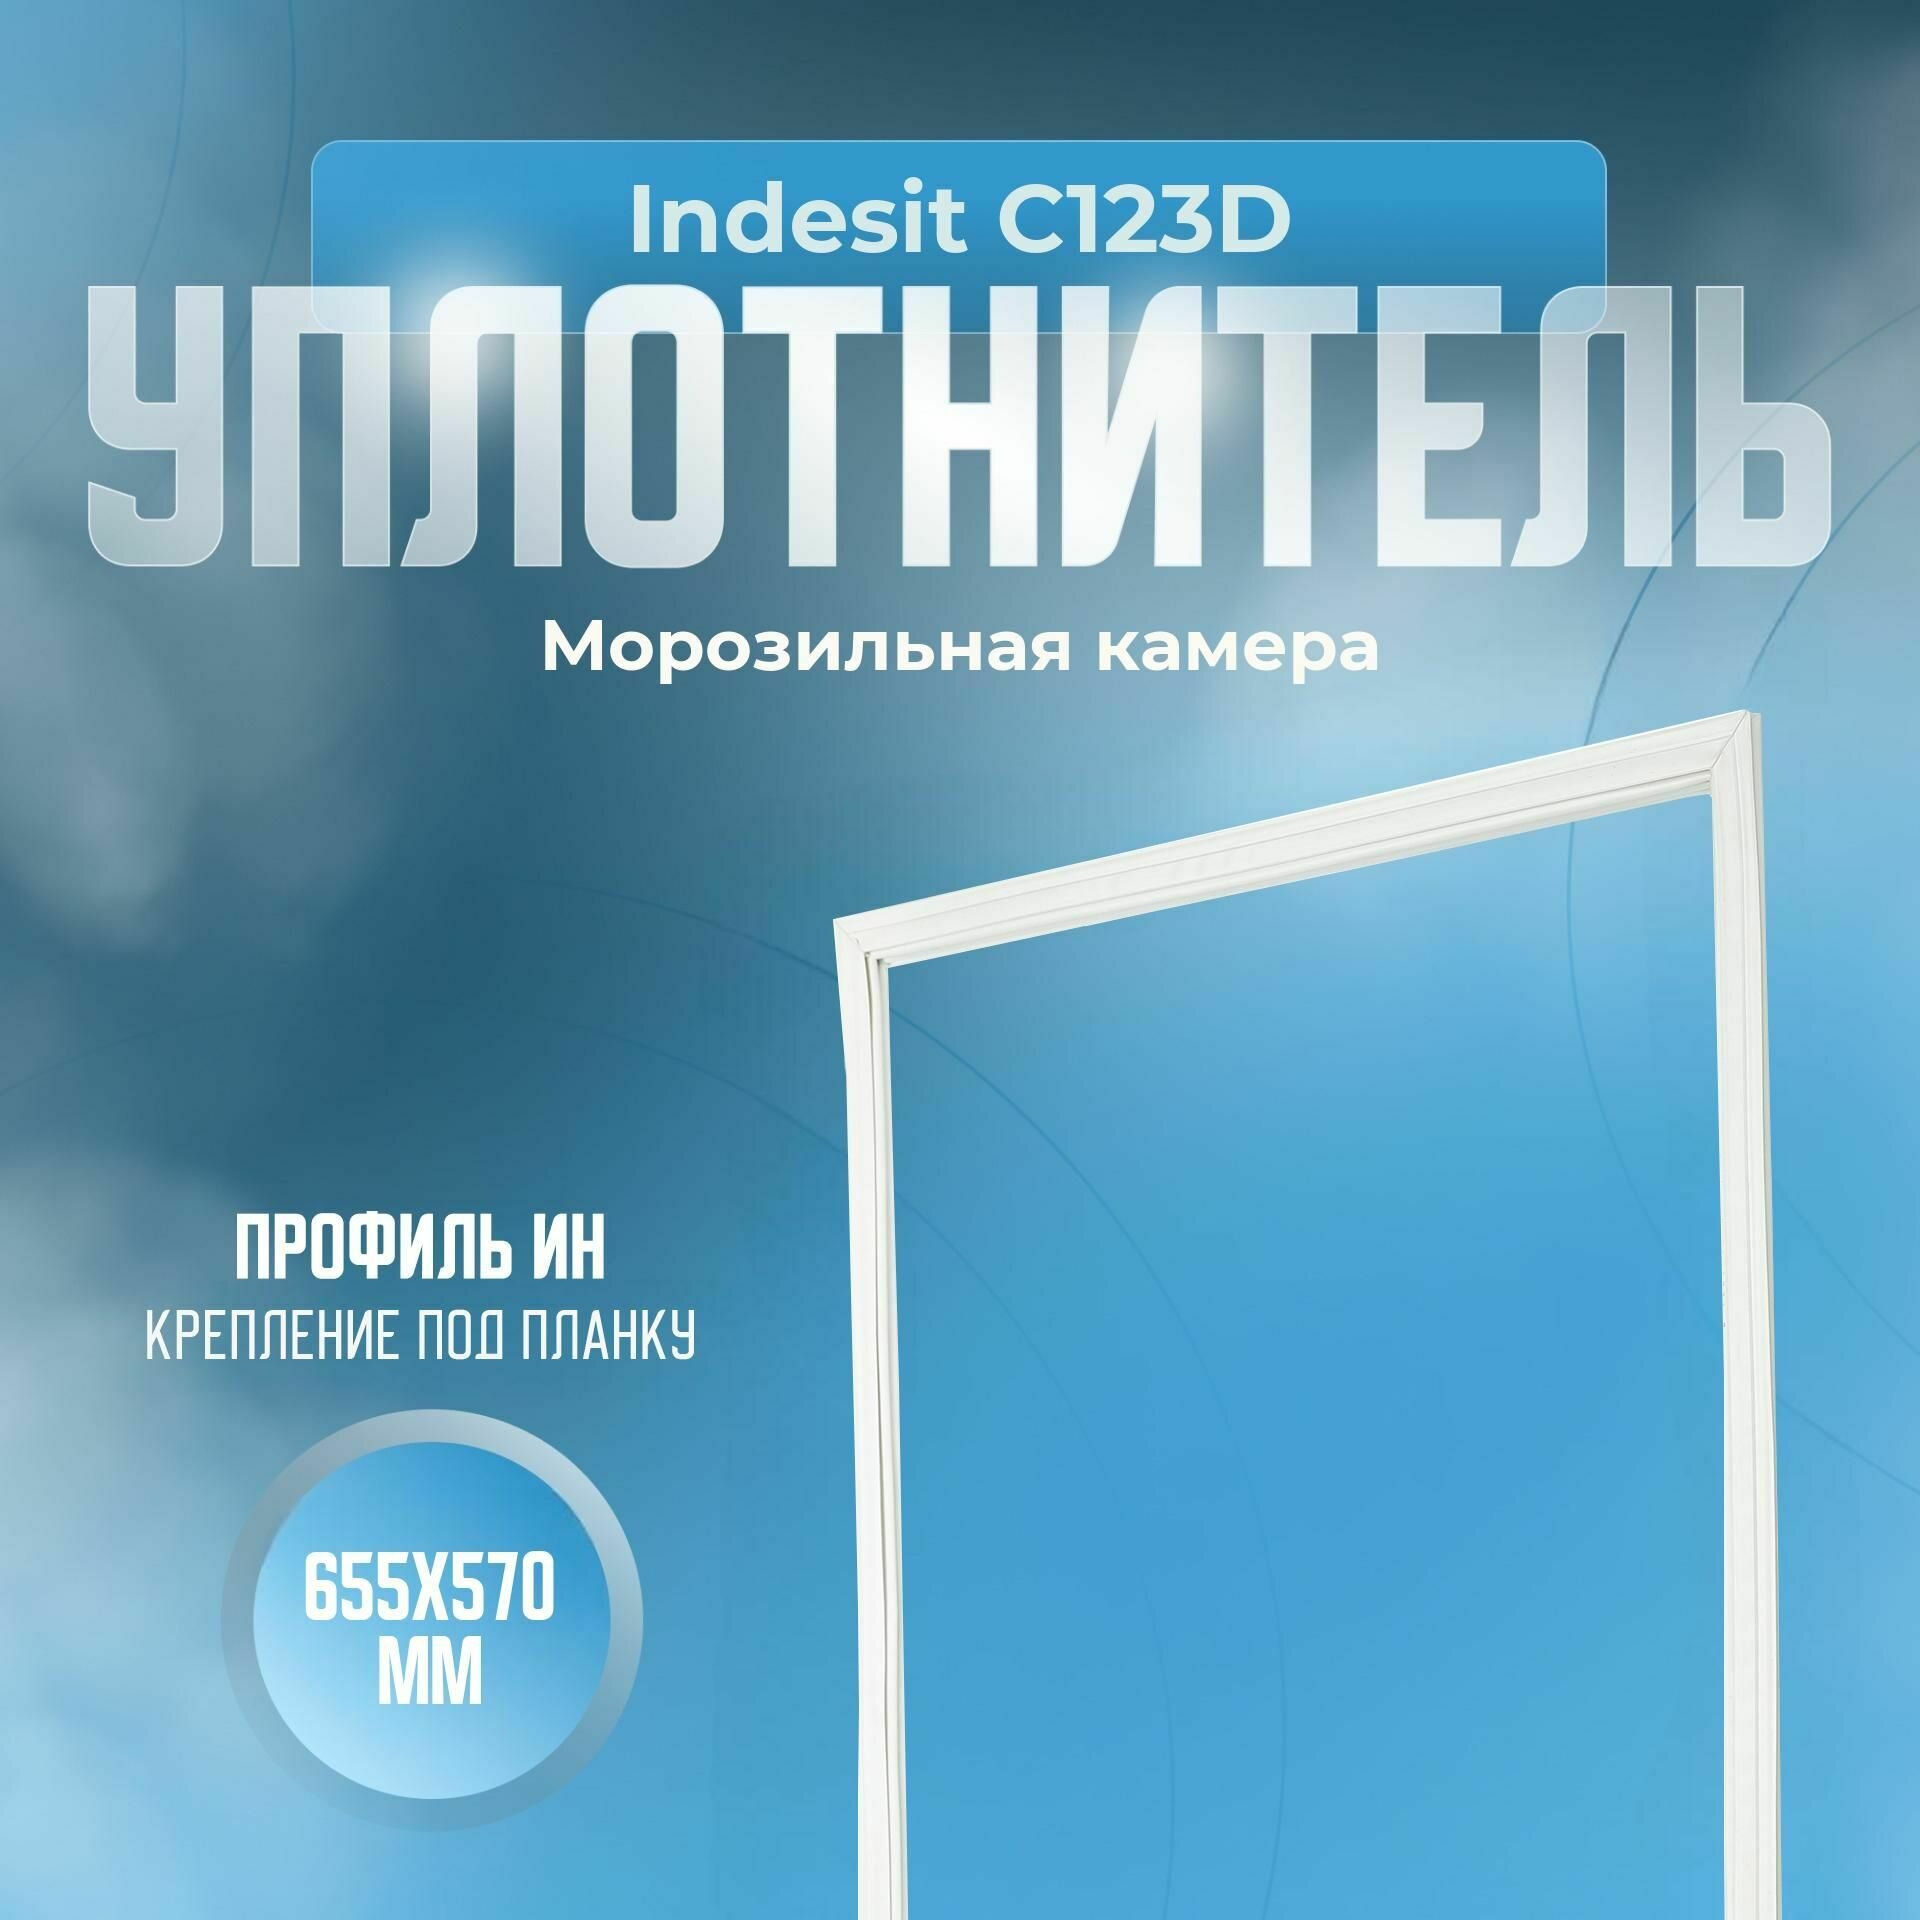 Уплотнитель Indesit C123D. м. к, Размер - 655х570 мм. ИН